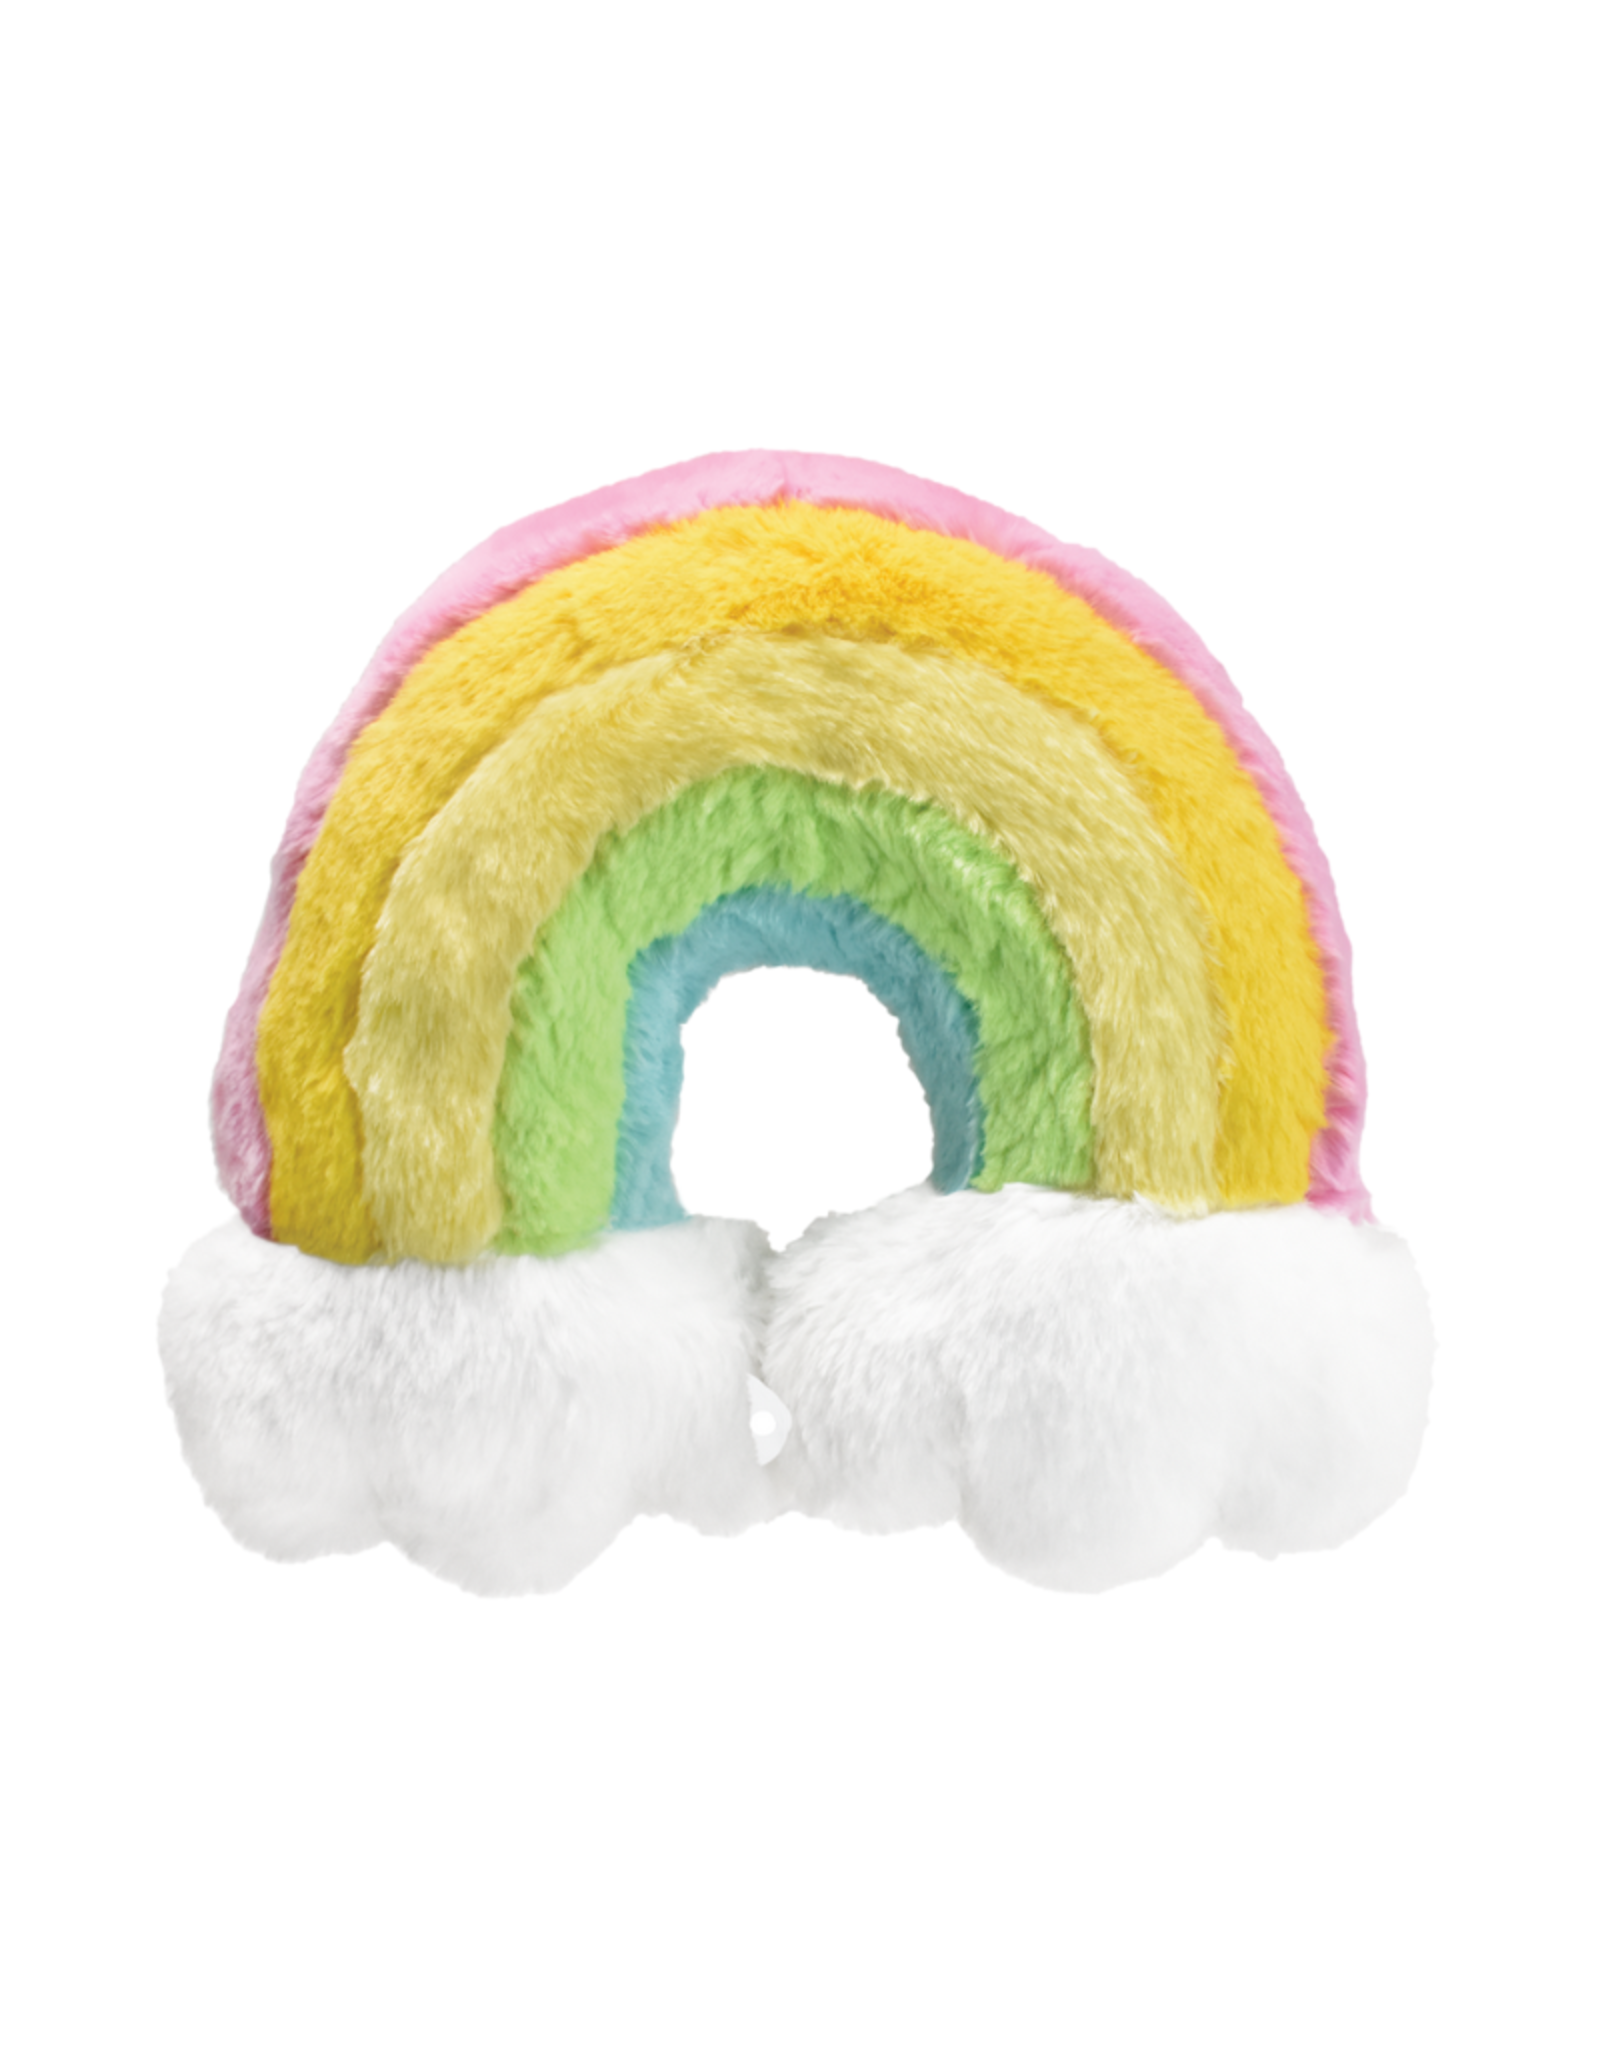 Iscream Rainbow Furry Neck Pillow